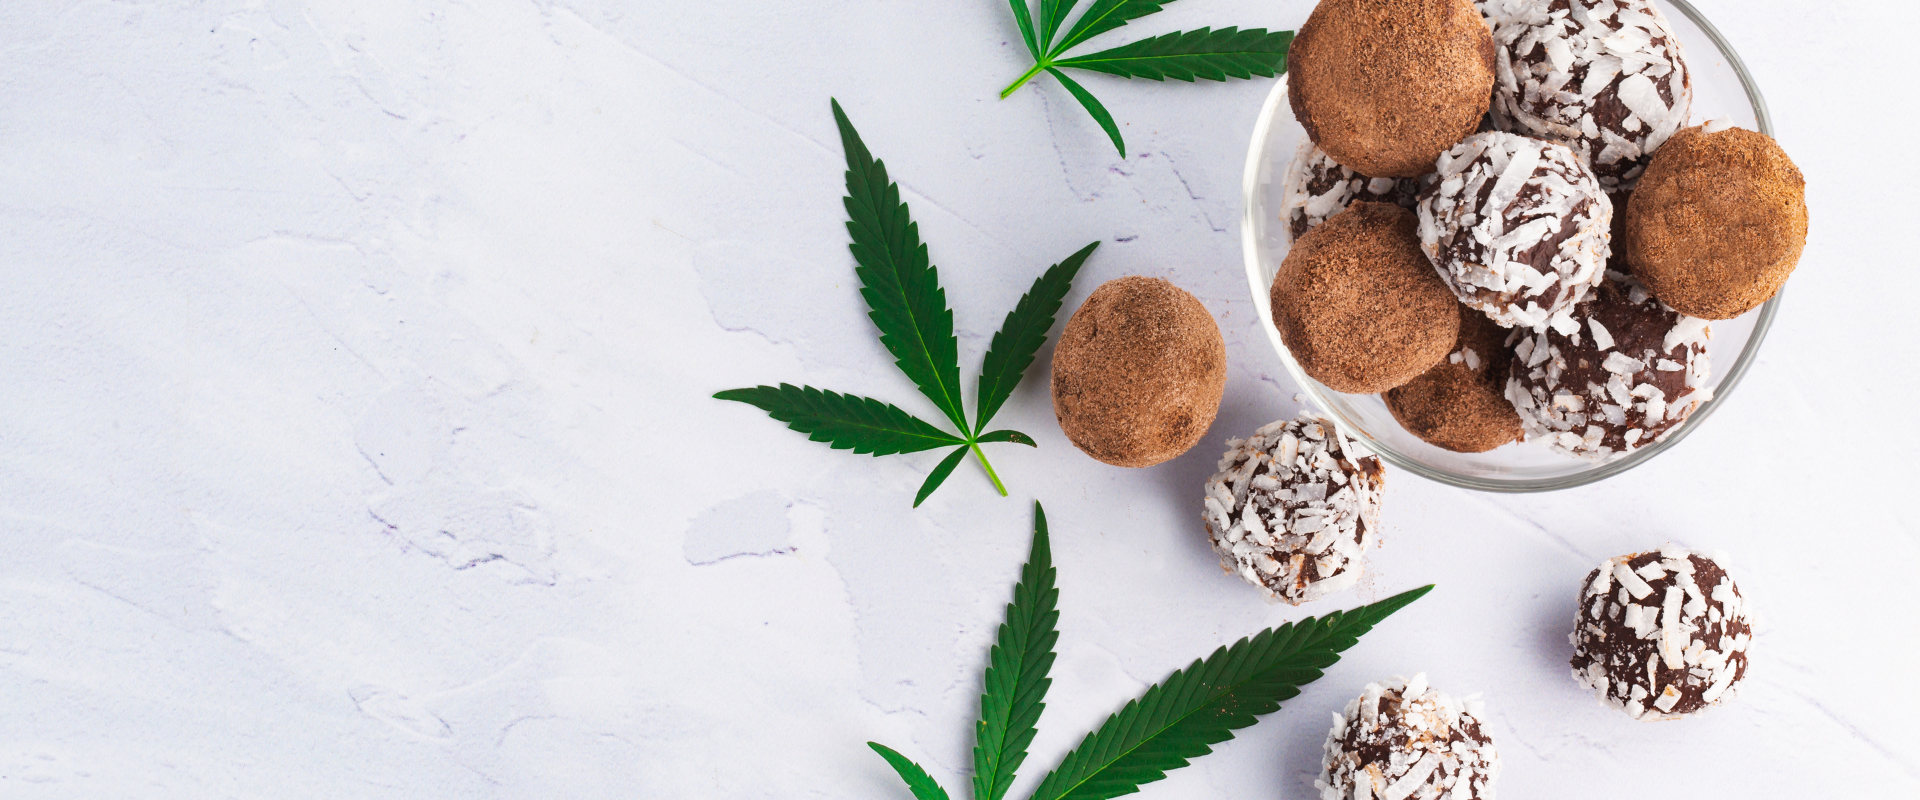 Here’s a Fun, Easy Way To Make Cannabis Sugar